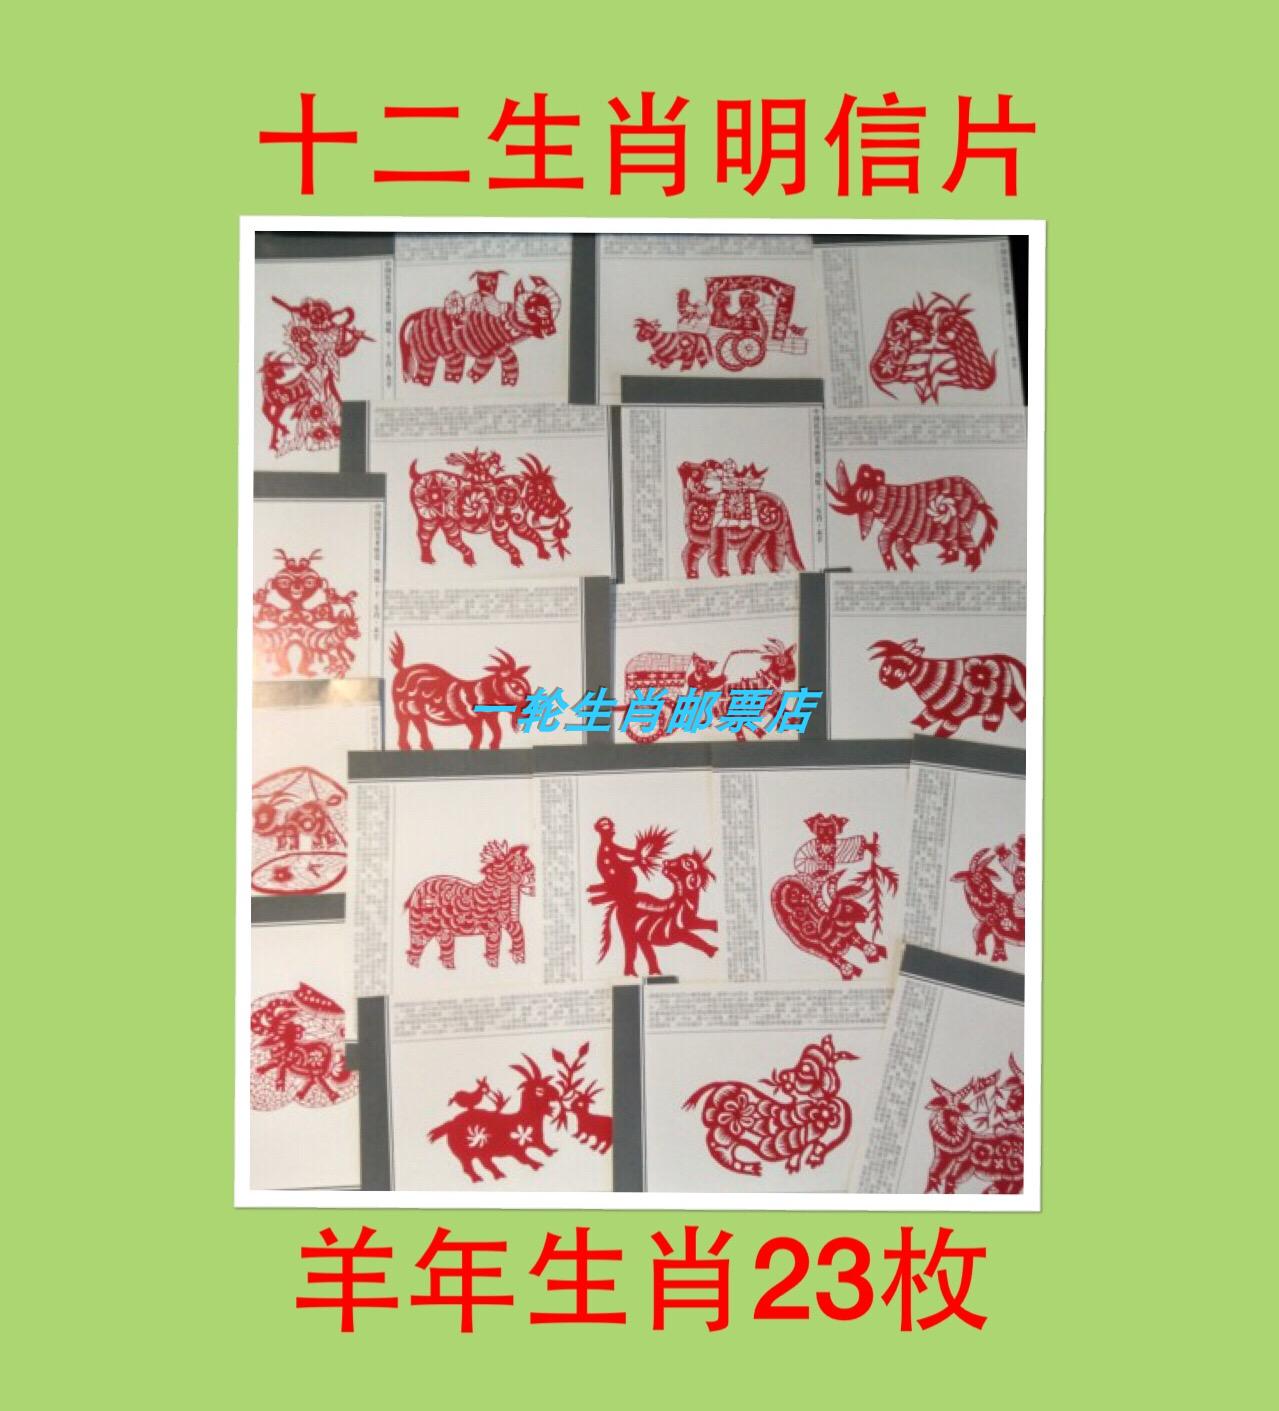 羊明信片中国十二生肖贺卡剪纸雕刻极限文艺小清新2018无邮政邮资